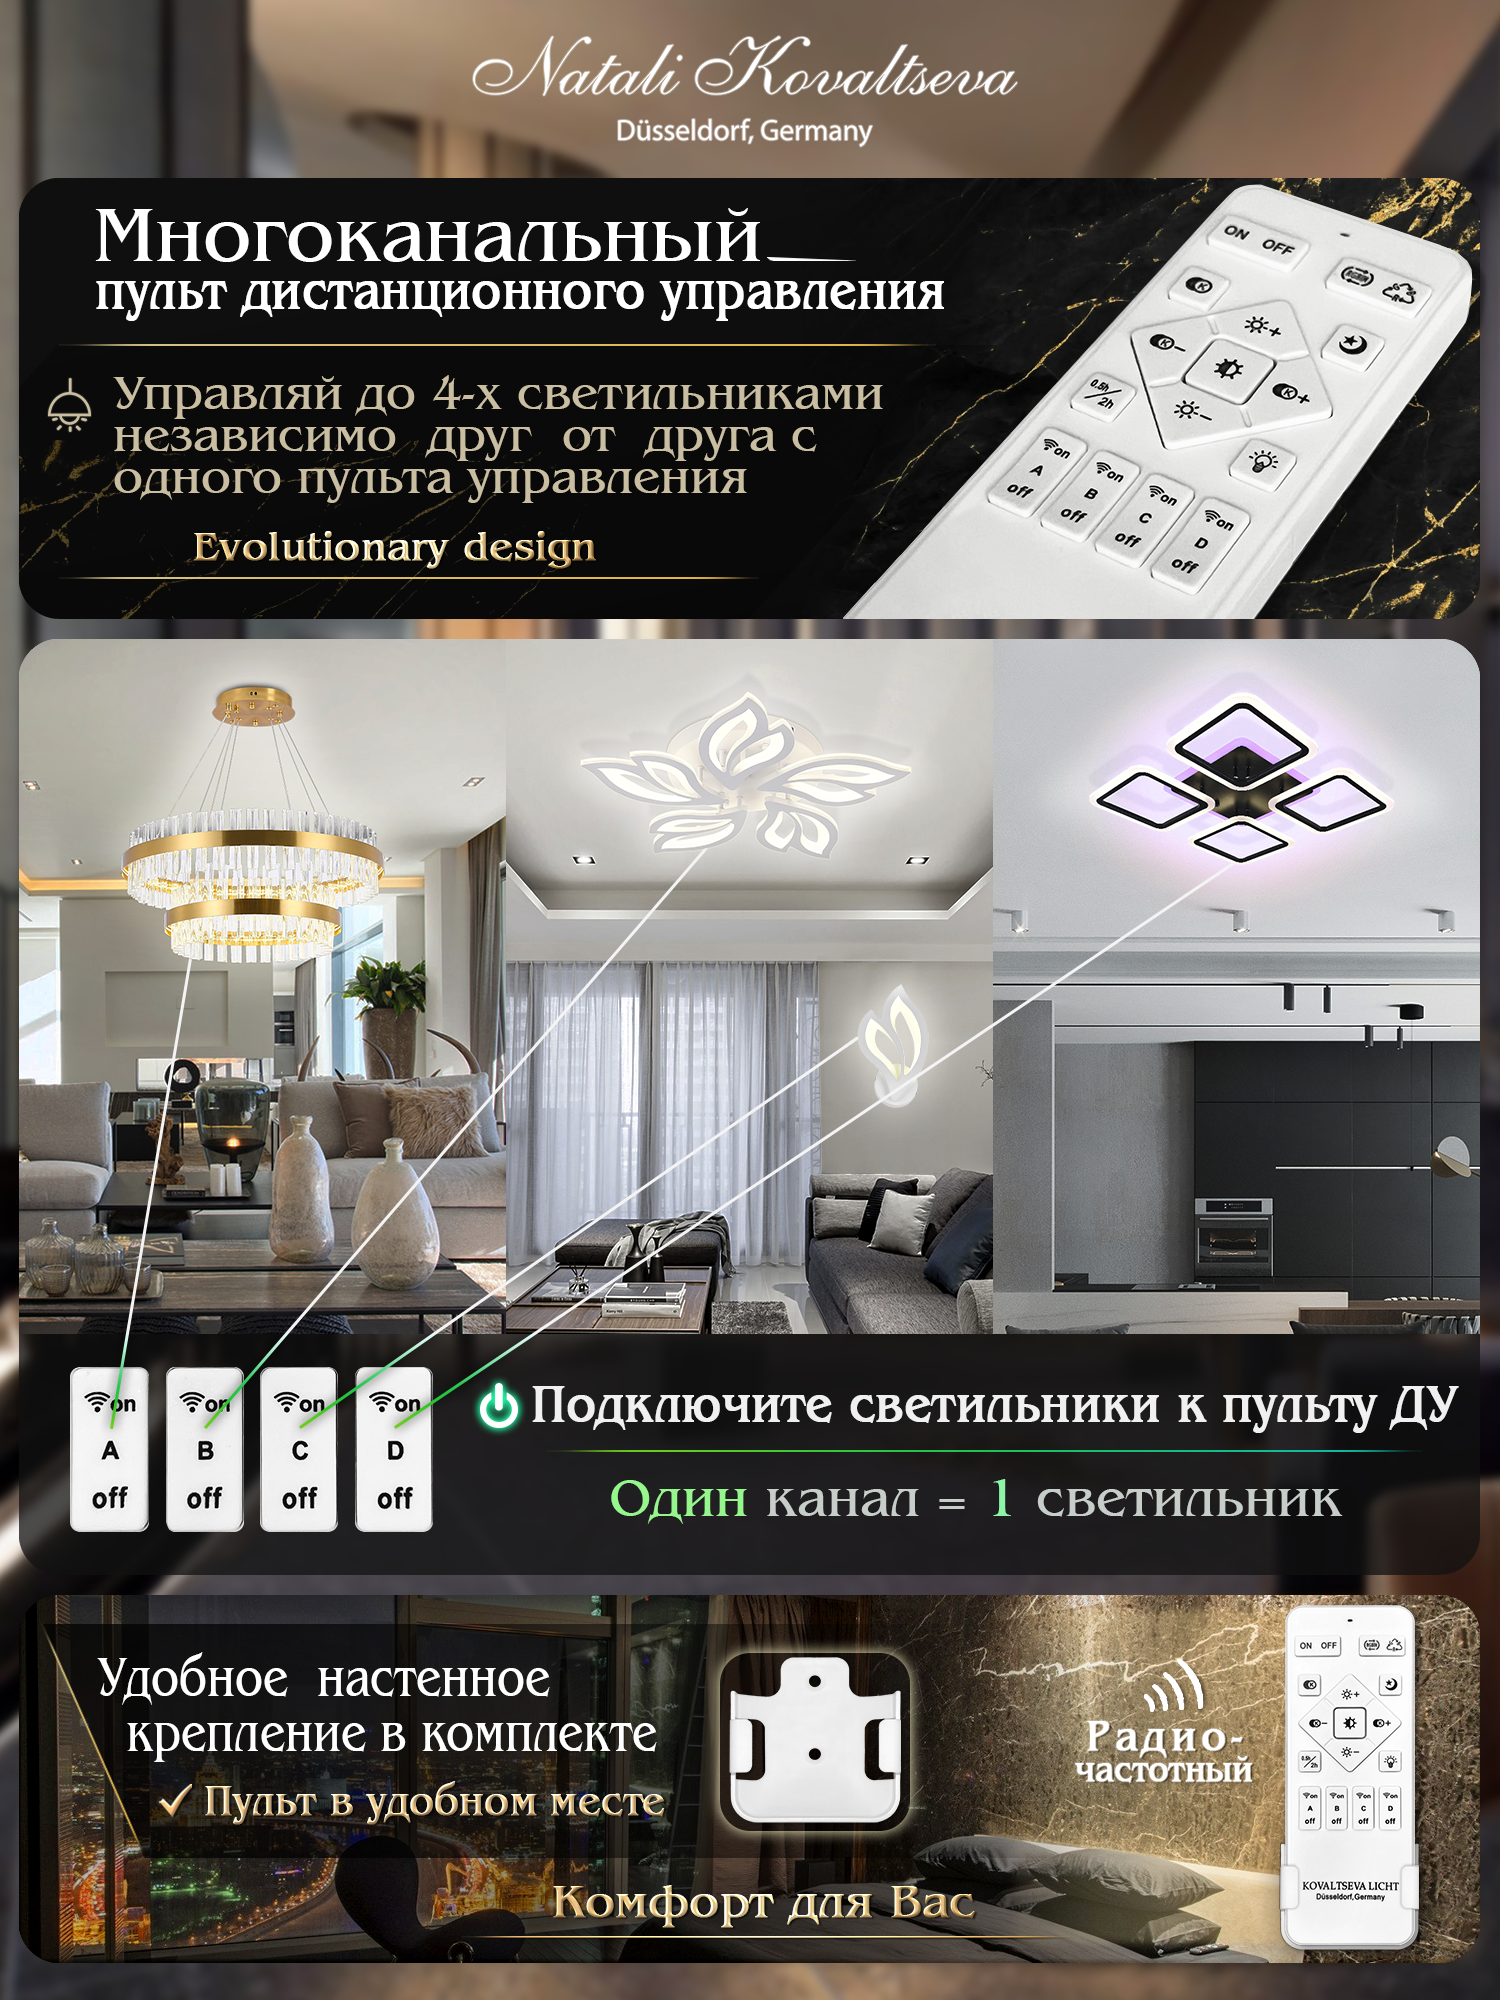 Светодиодный светильник NATALI KOVALTSEVA люстра 80W черный LED - фото 2